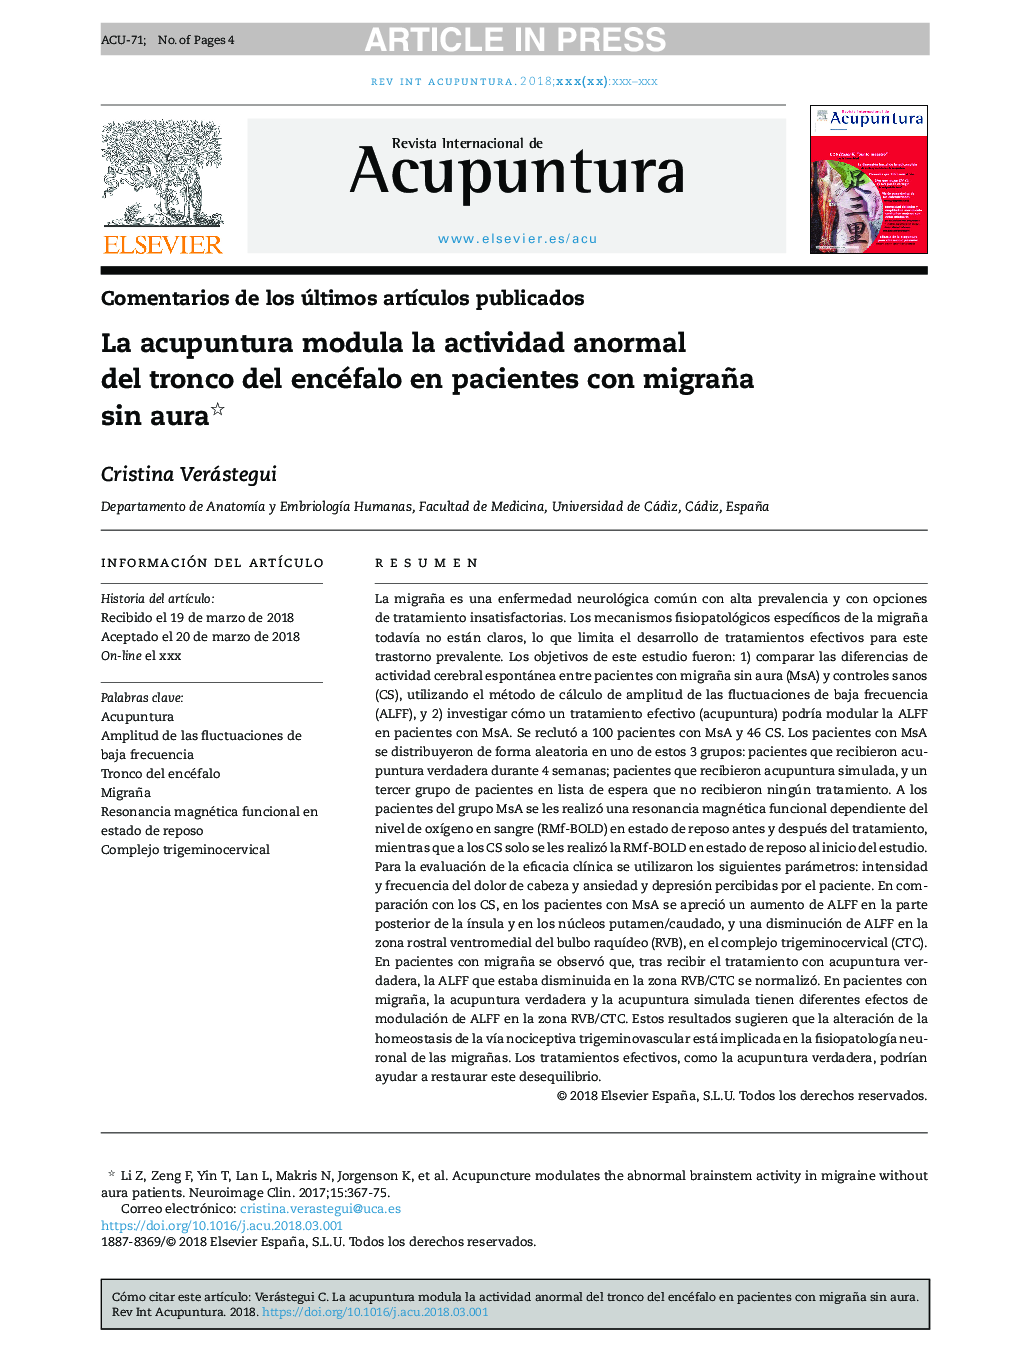 La acupuntura modula la actividad anormal del tronco del encéfalo en pacientes con migraña sin aura